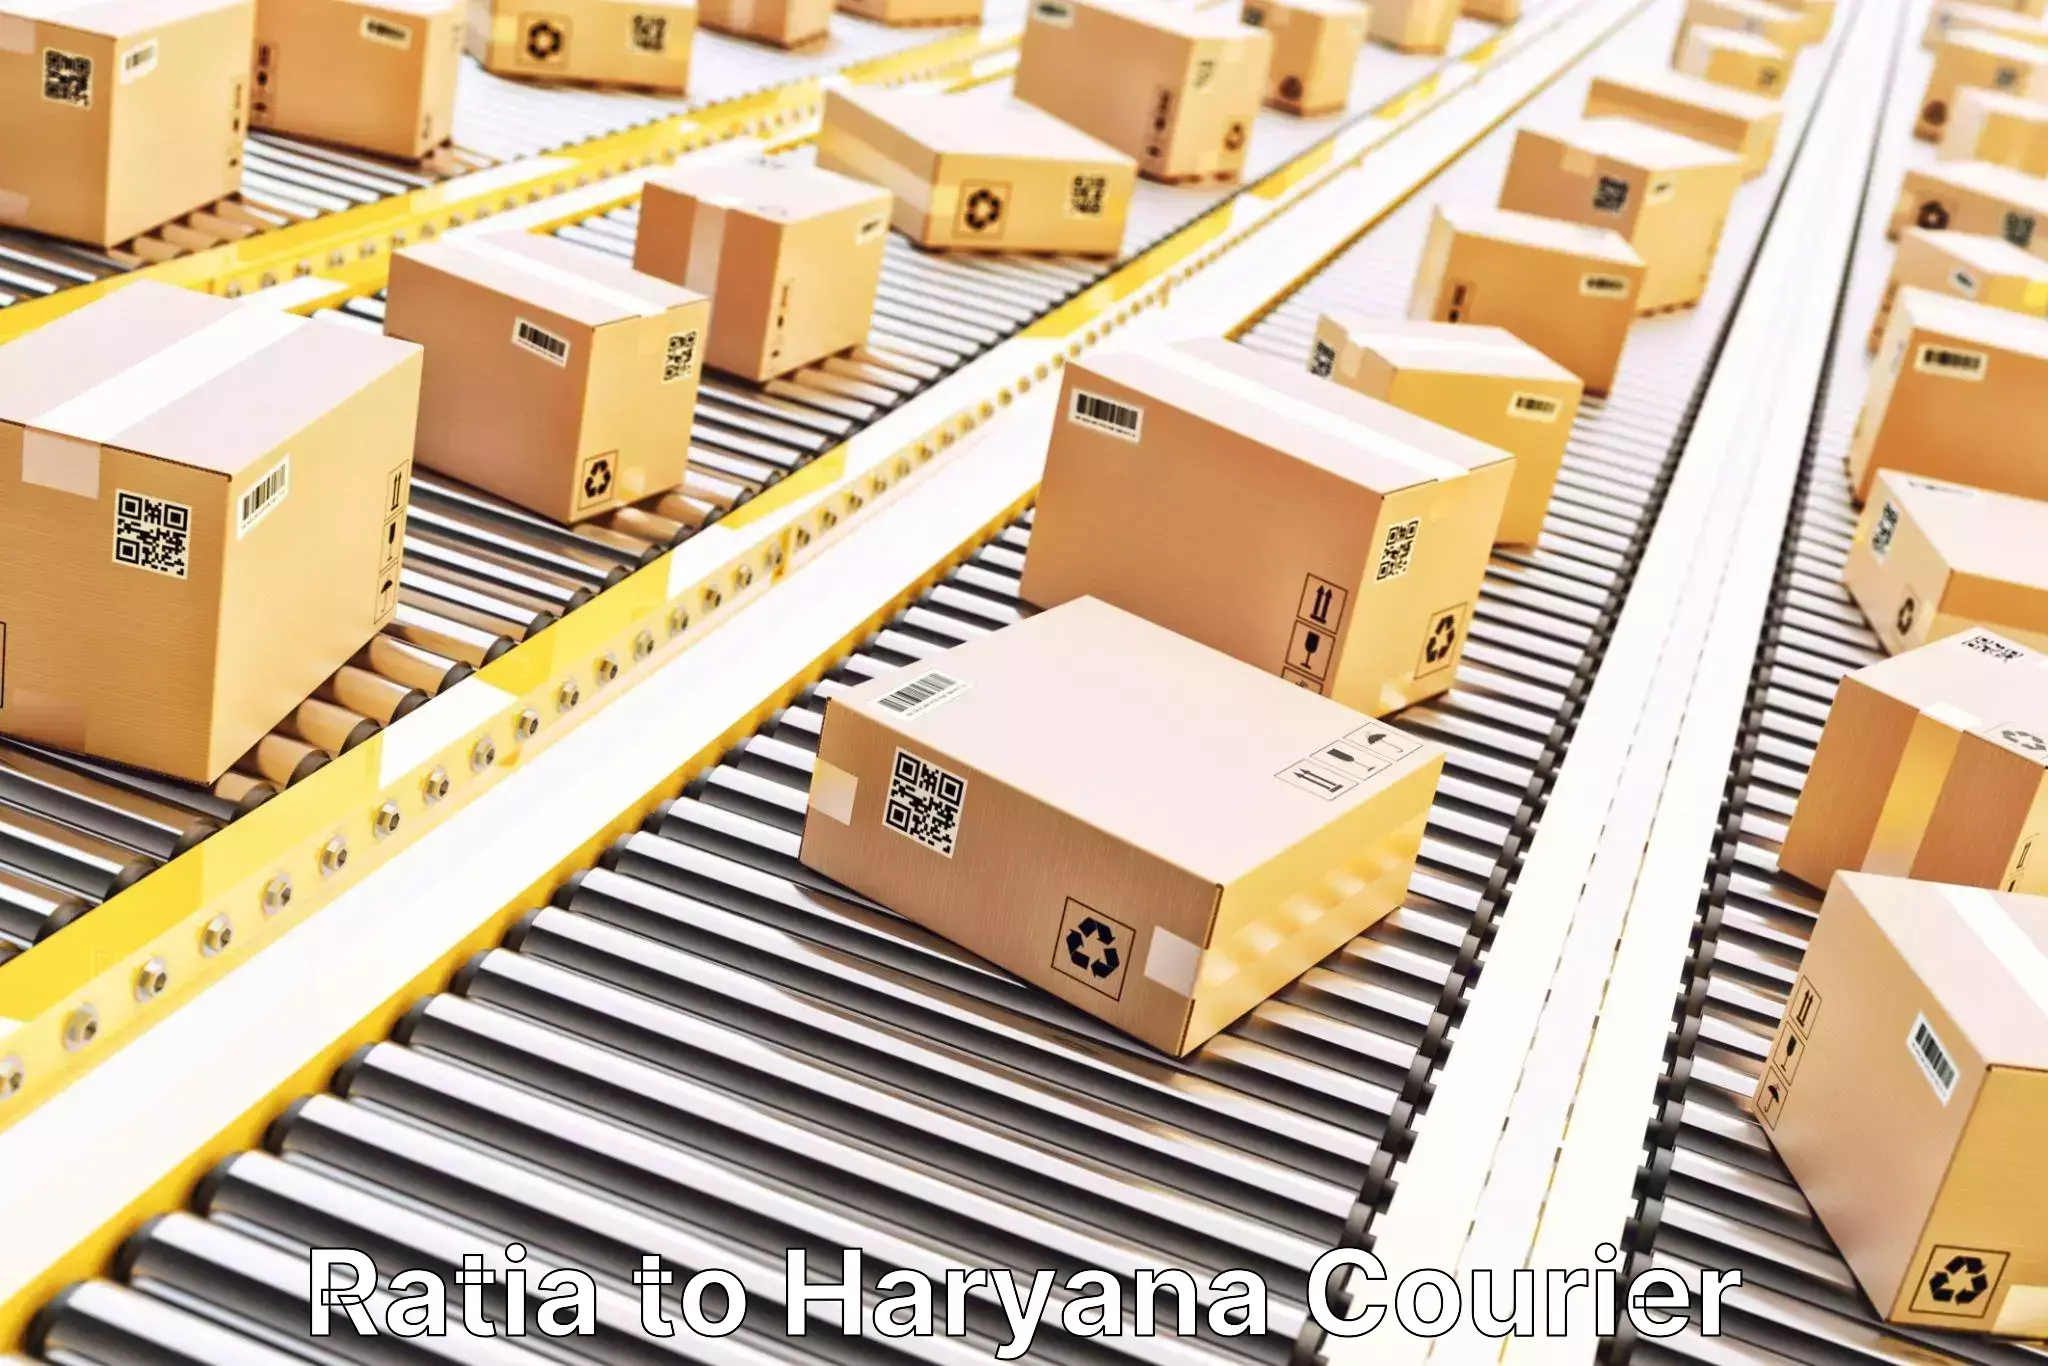 Efficient logistics management Ratia to Samalkha